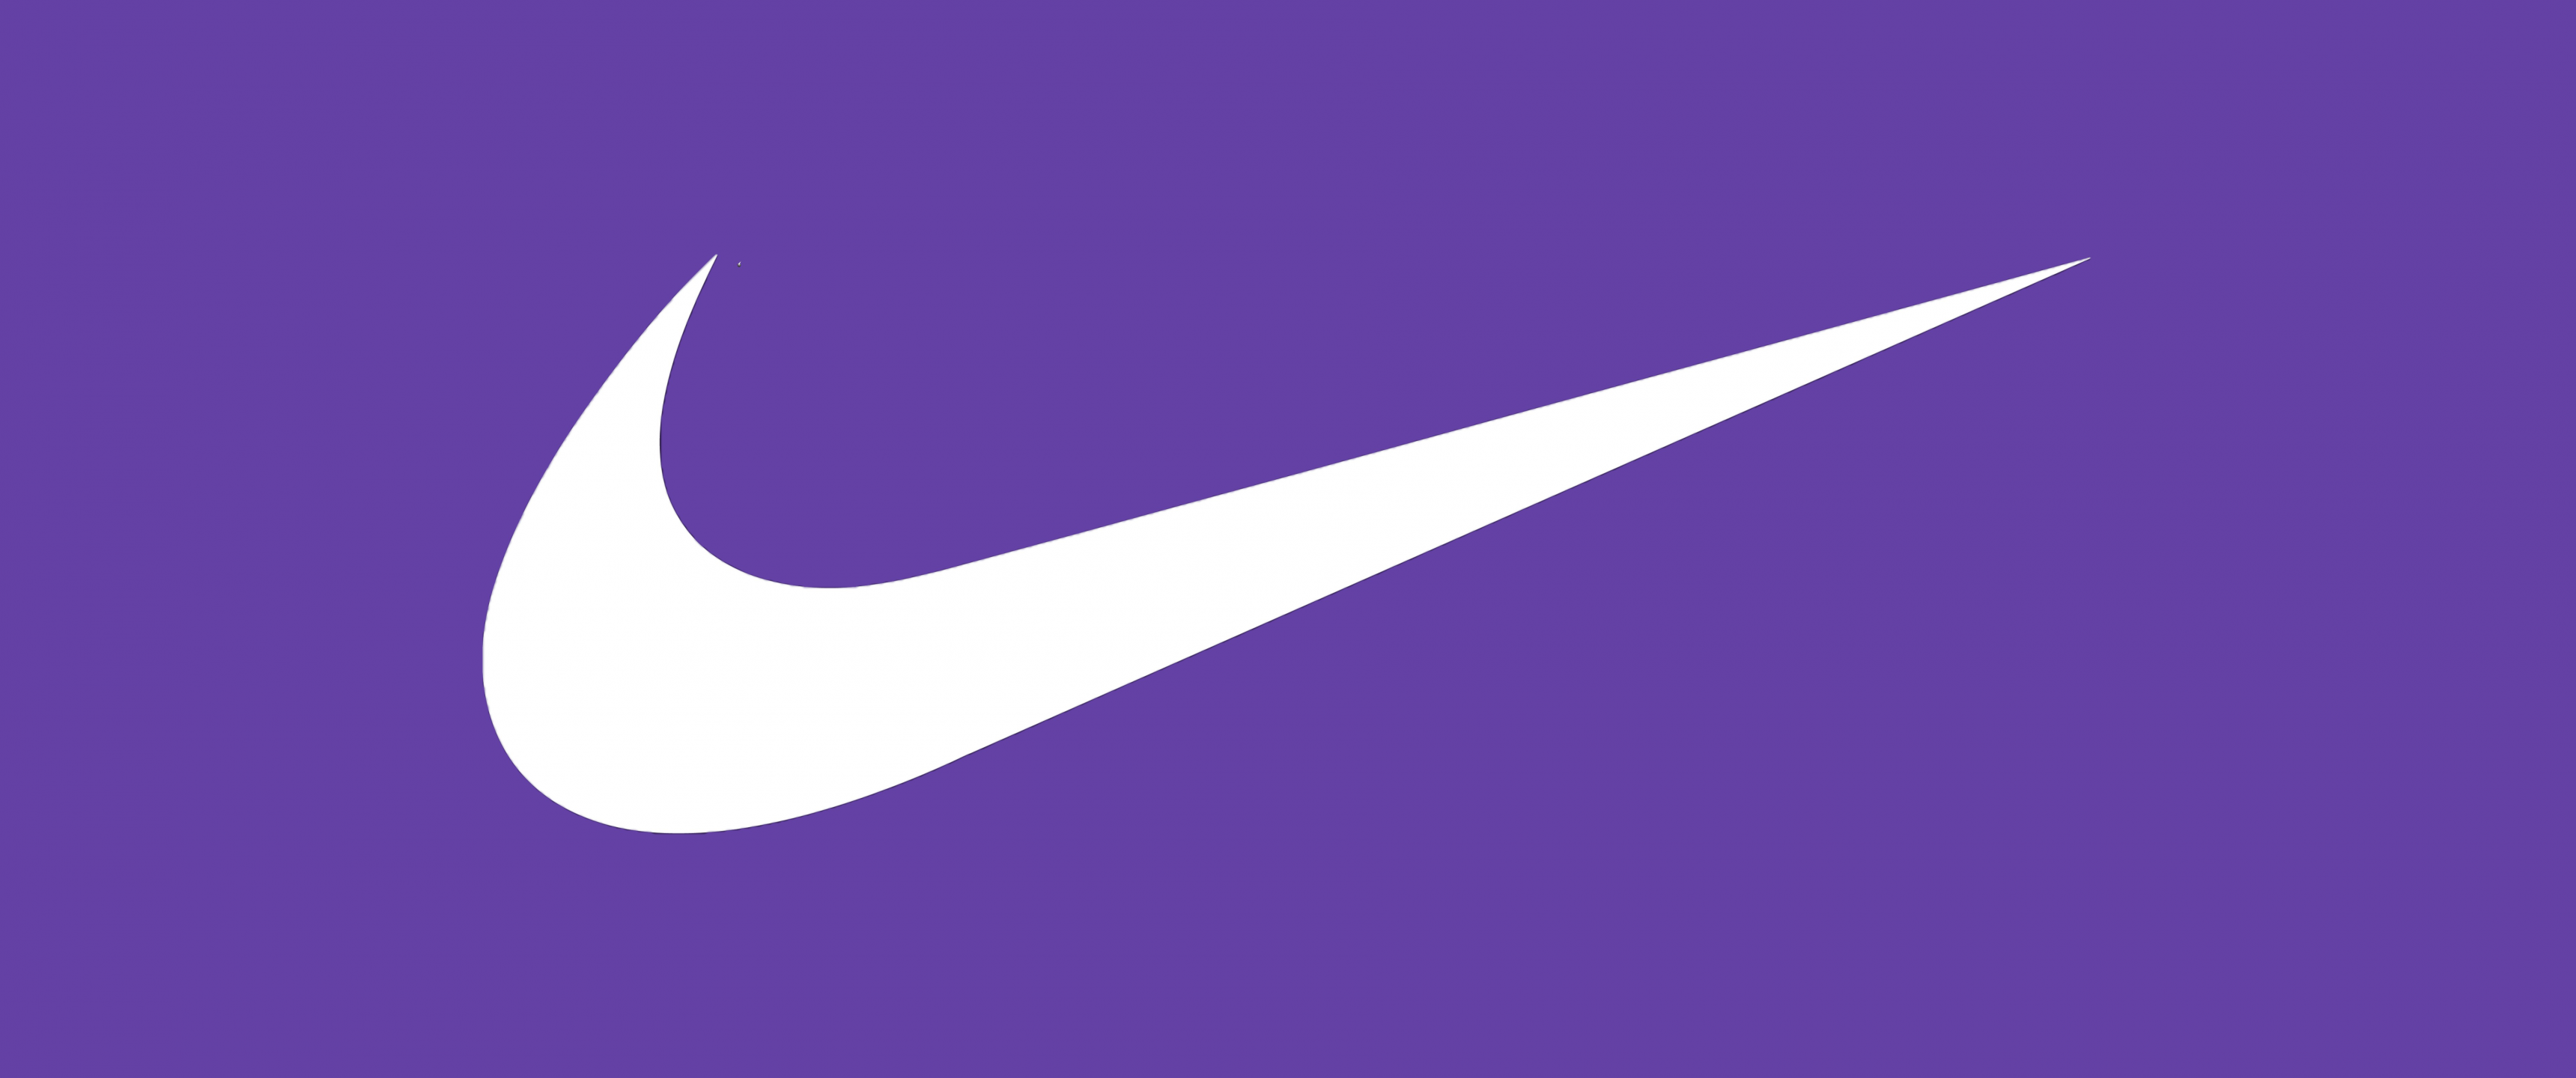 Nike Wallpaper 4K, Purple background, 5K, 8K, Simple